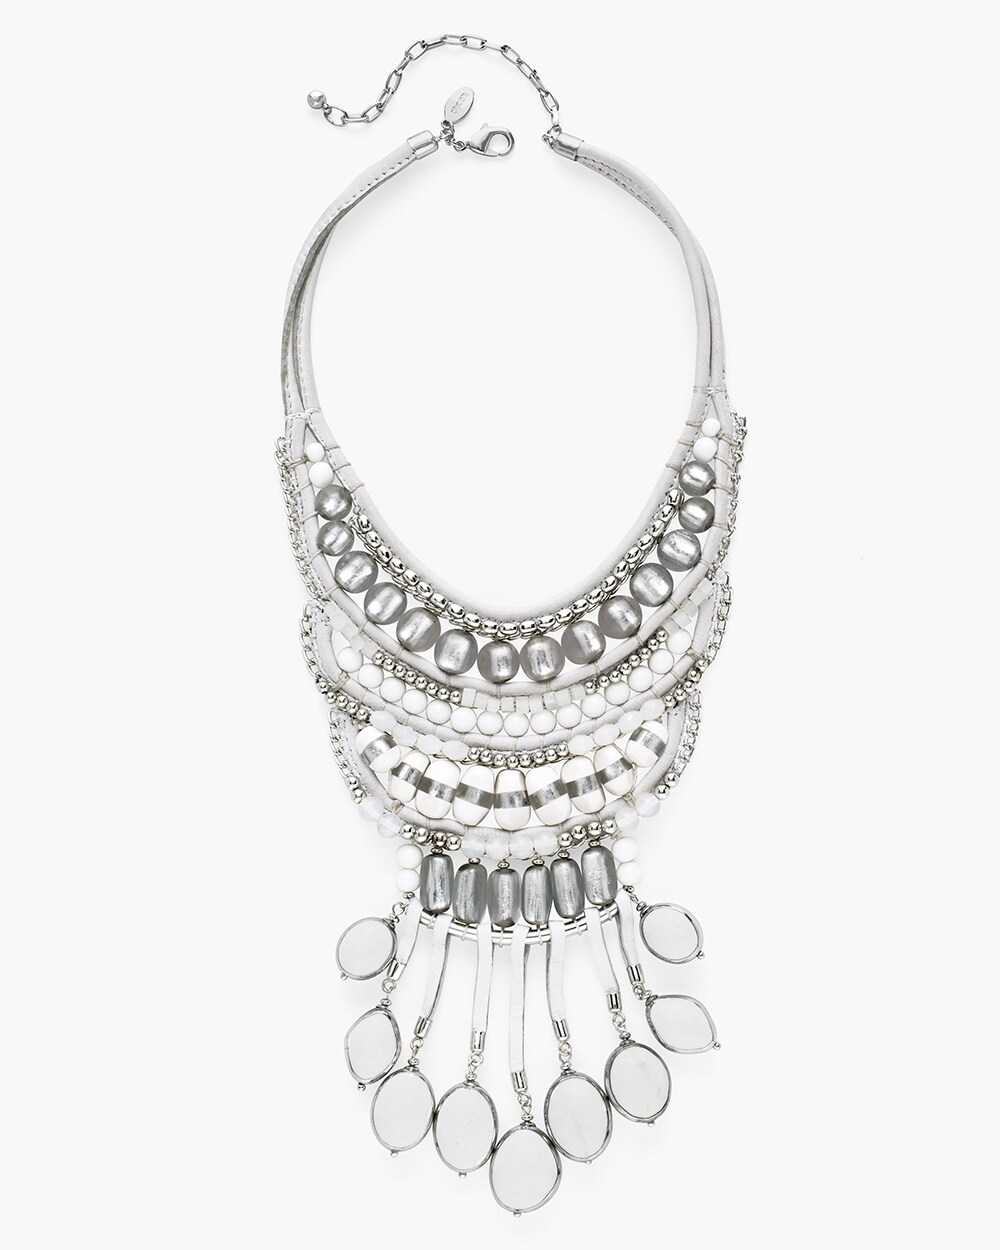 White and Silver-Tone Bib Necklace